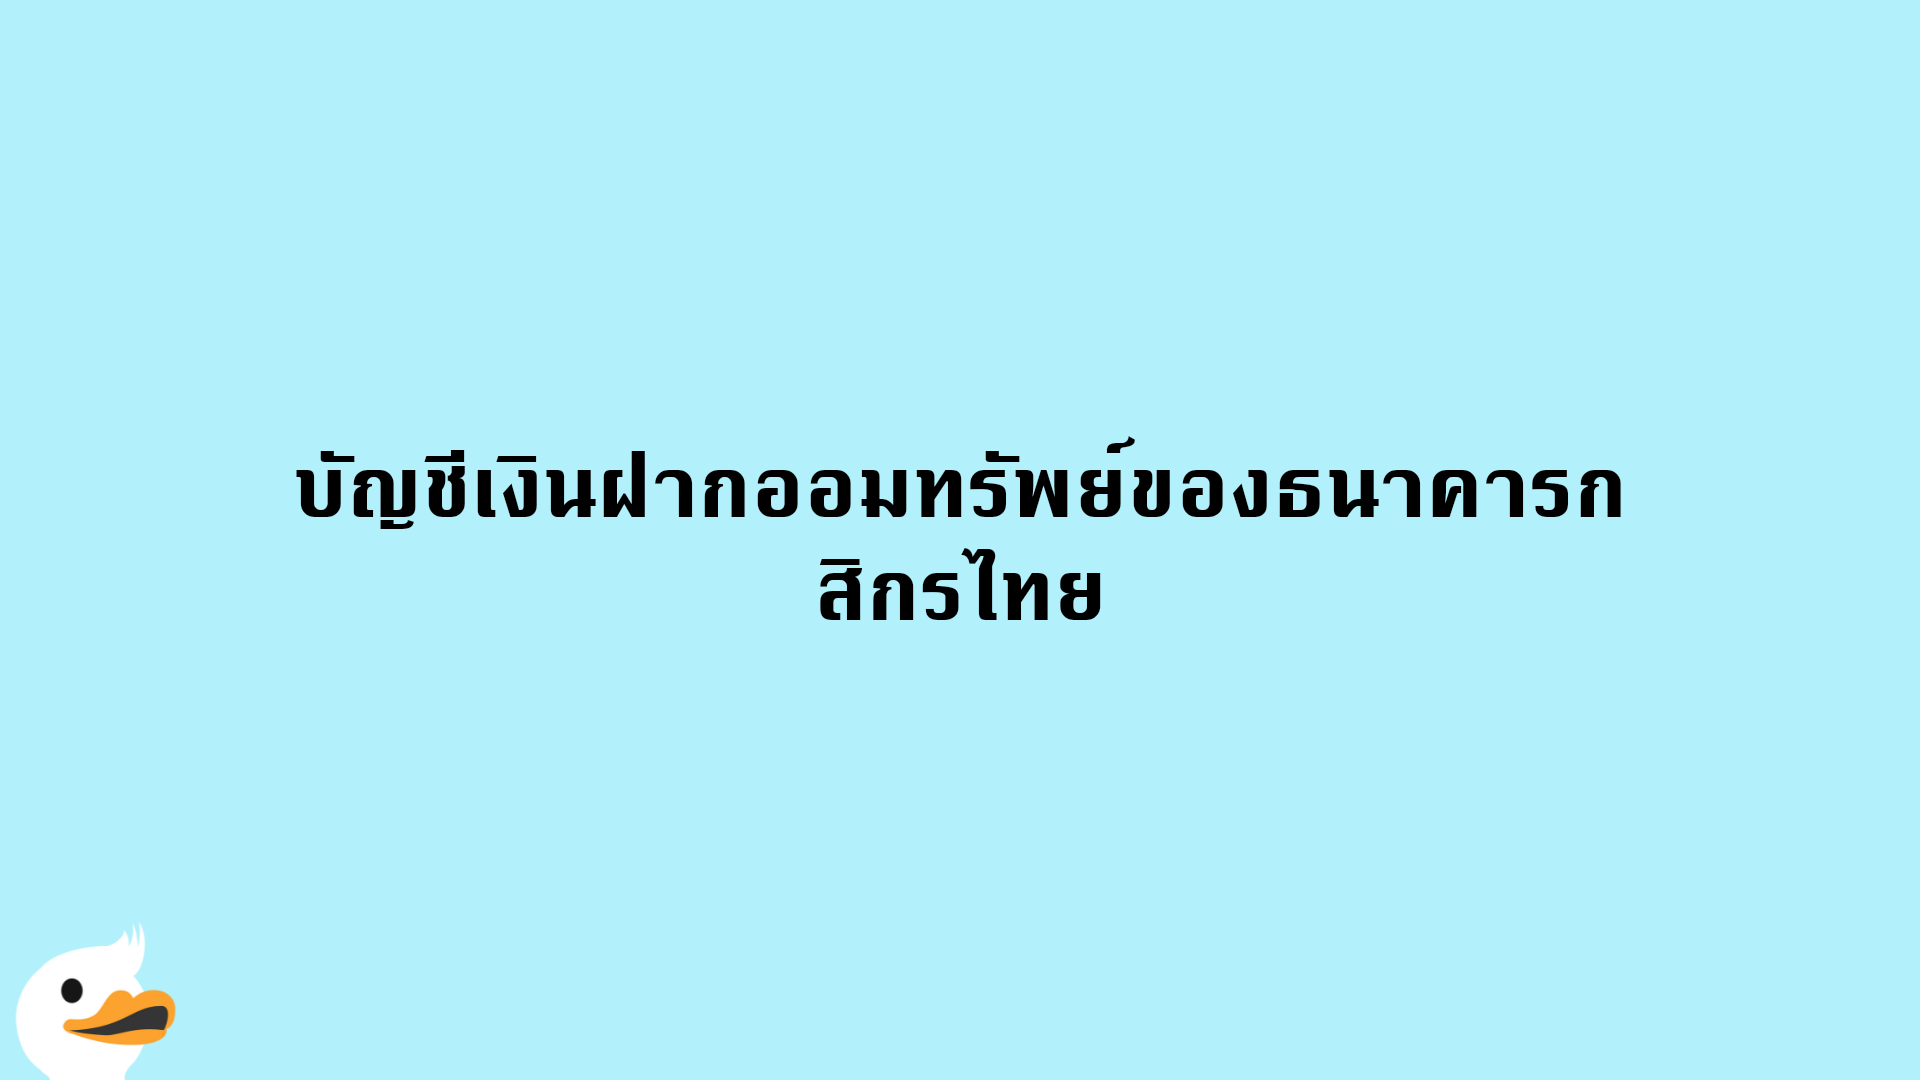 บัญชีเงินฝากออมทรัพย์ของธนาคารกสิกรไทย